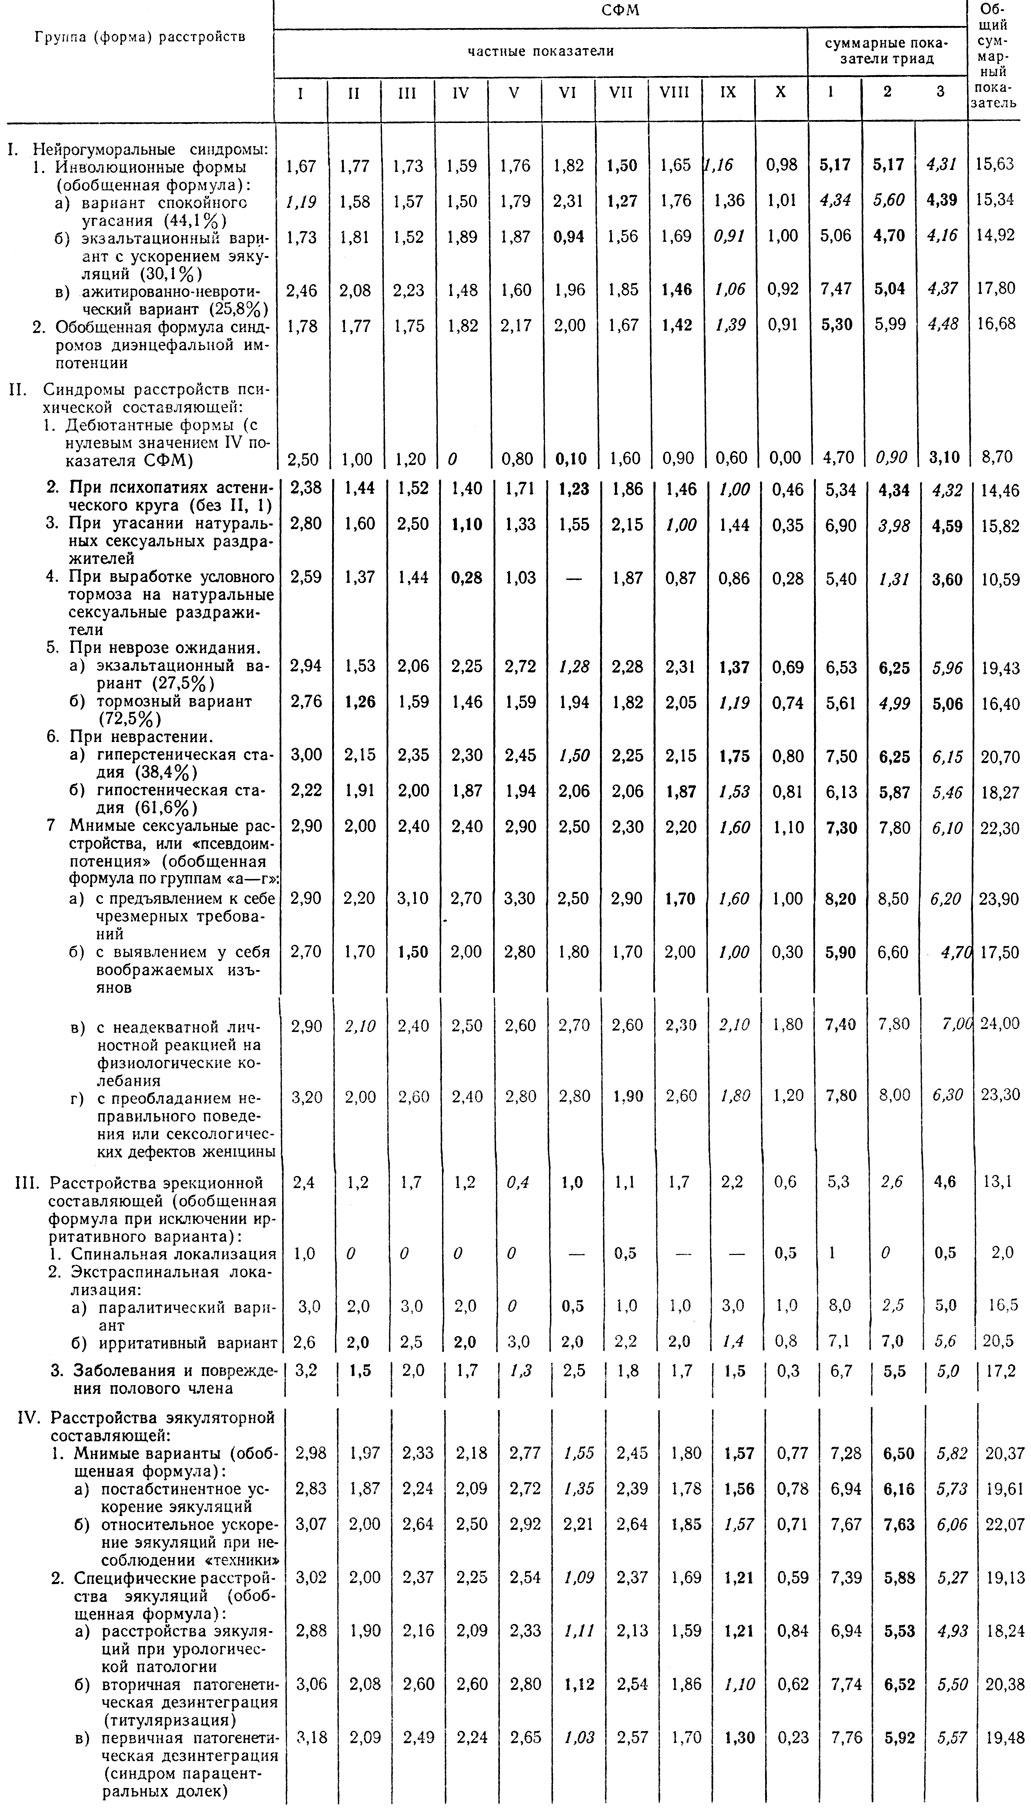 Таблица 11. Типовые формулы СФМ при основных формах сексуальных расстройств